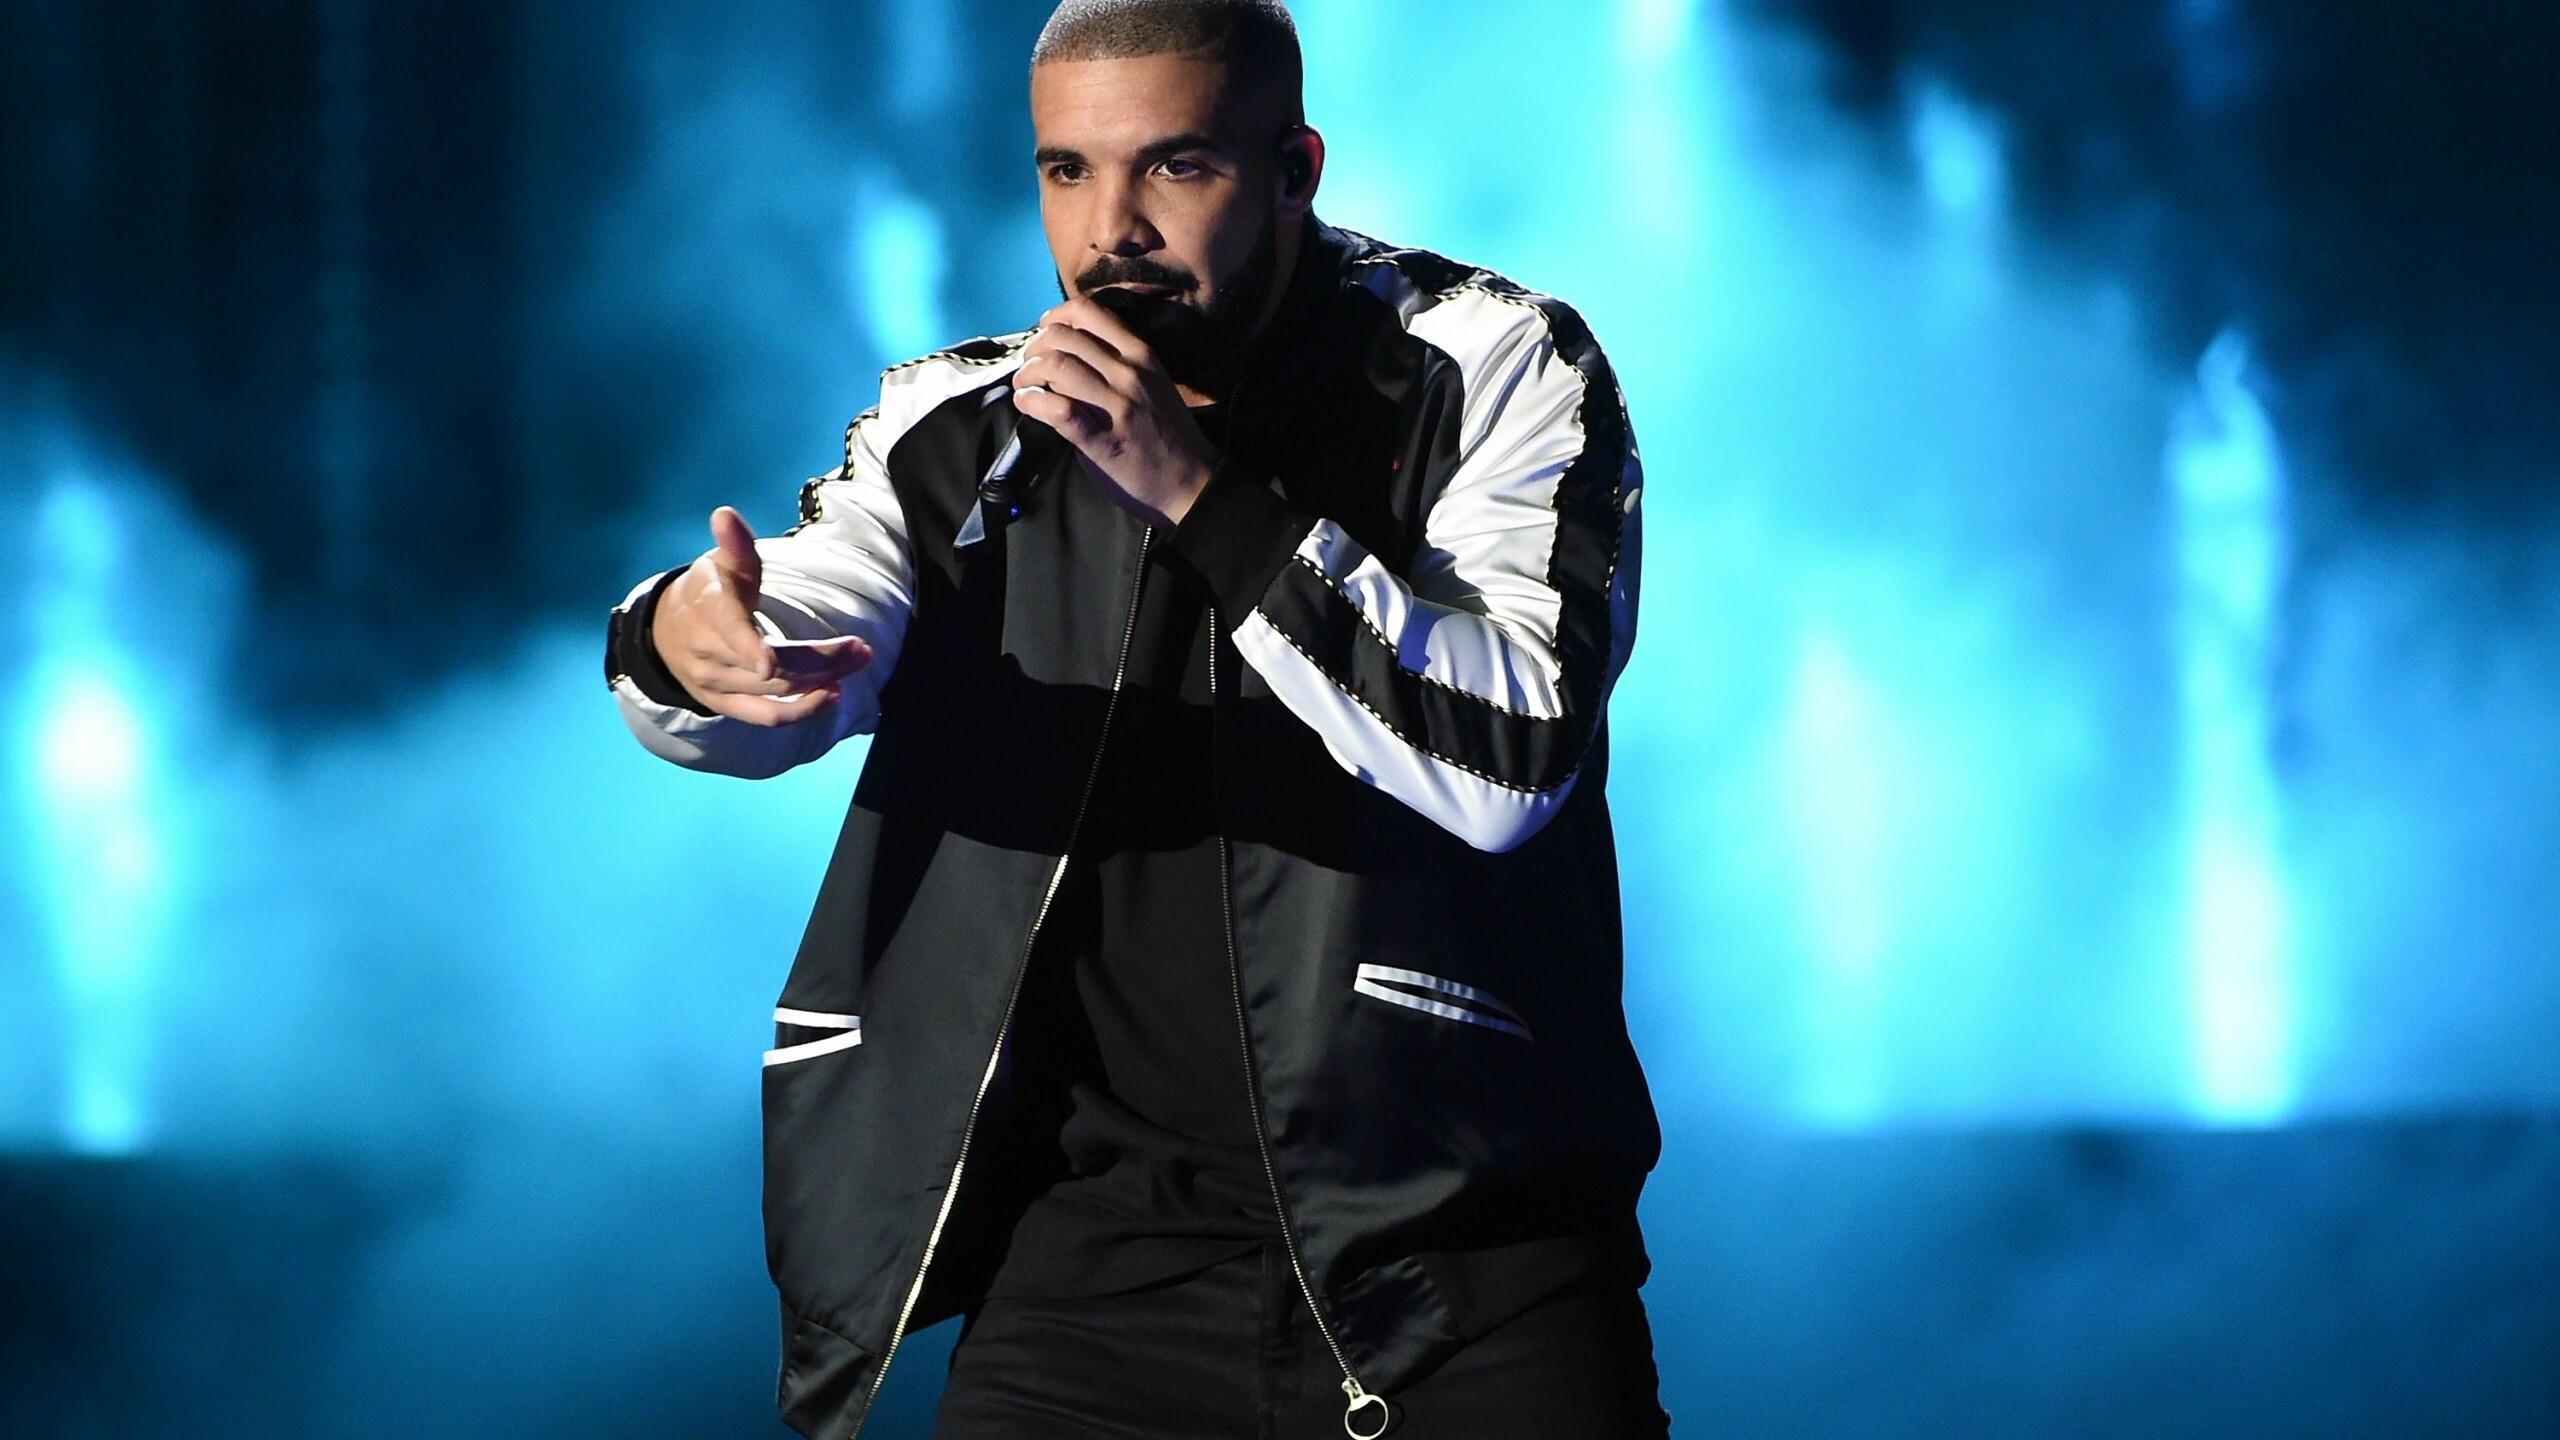 Grammys 2017, Drake's win, Celebrity fashion, Wallpaper, 2560x1440 HD Desktop